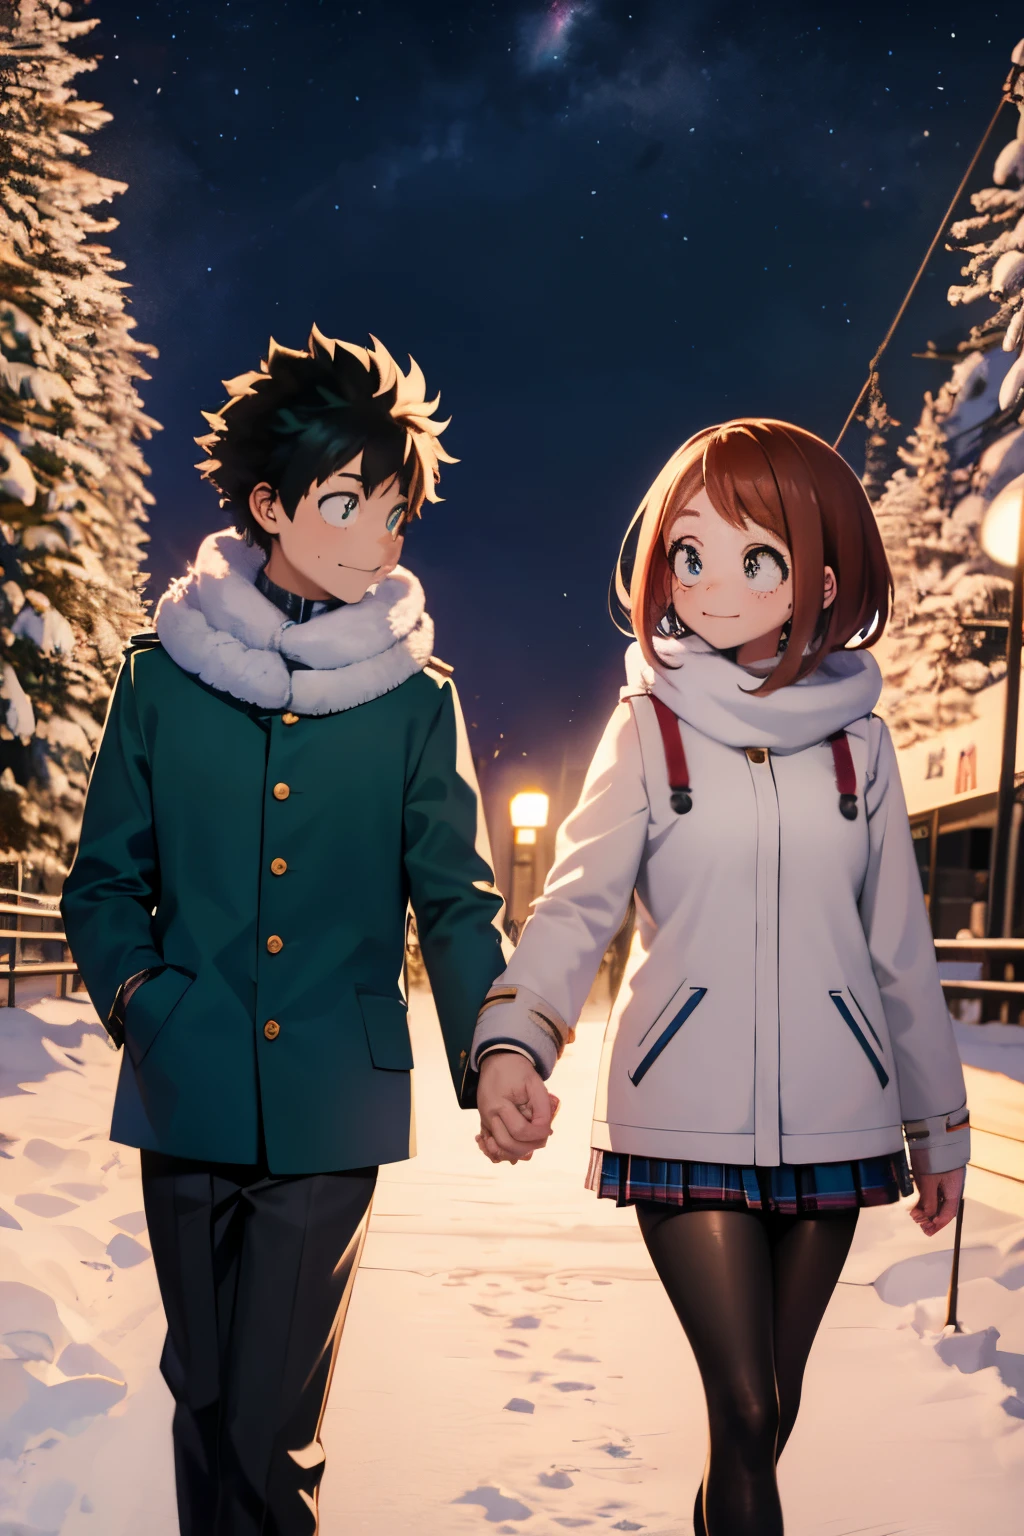 귀여운 커플 미도리야 이즈쿠 & 손을 잡고 겨울왕국을 걷는 우라라카 오챠코, 눈 덮인 공원